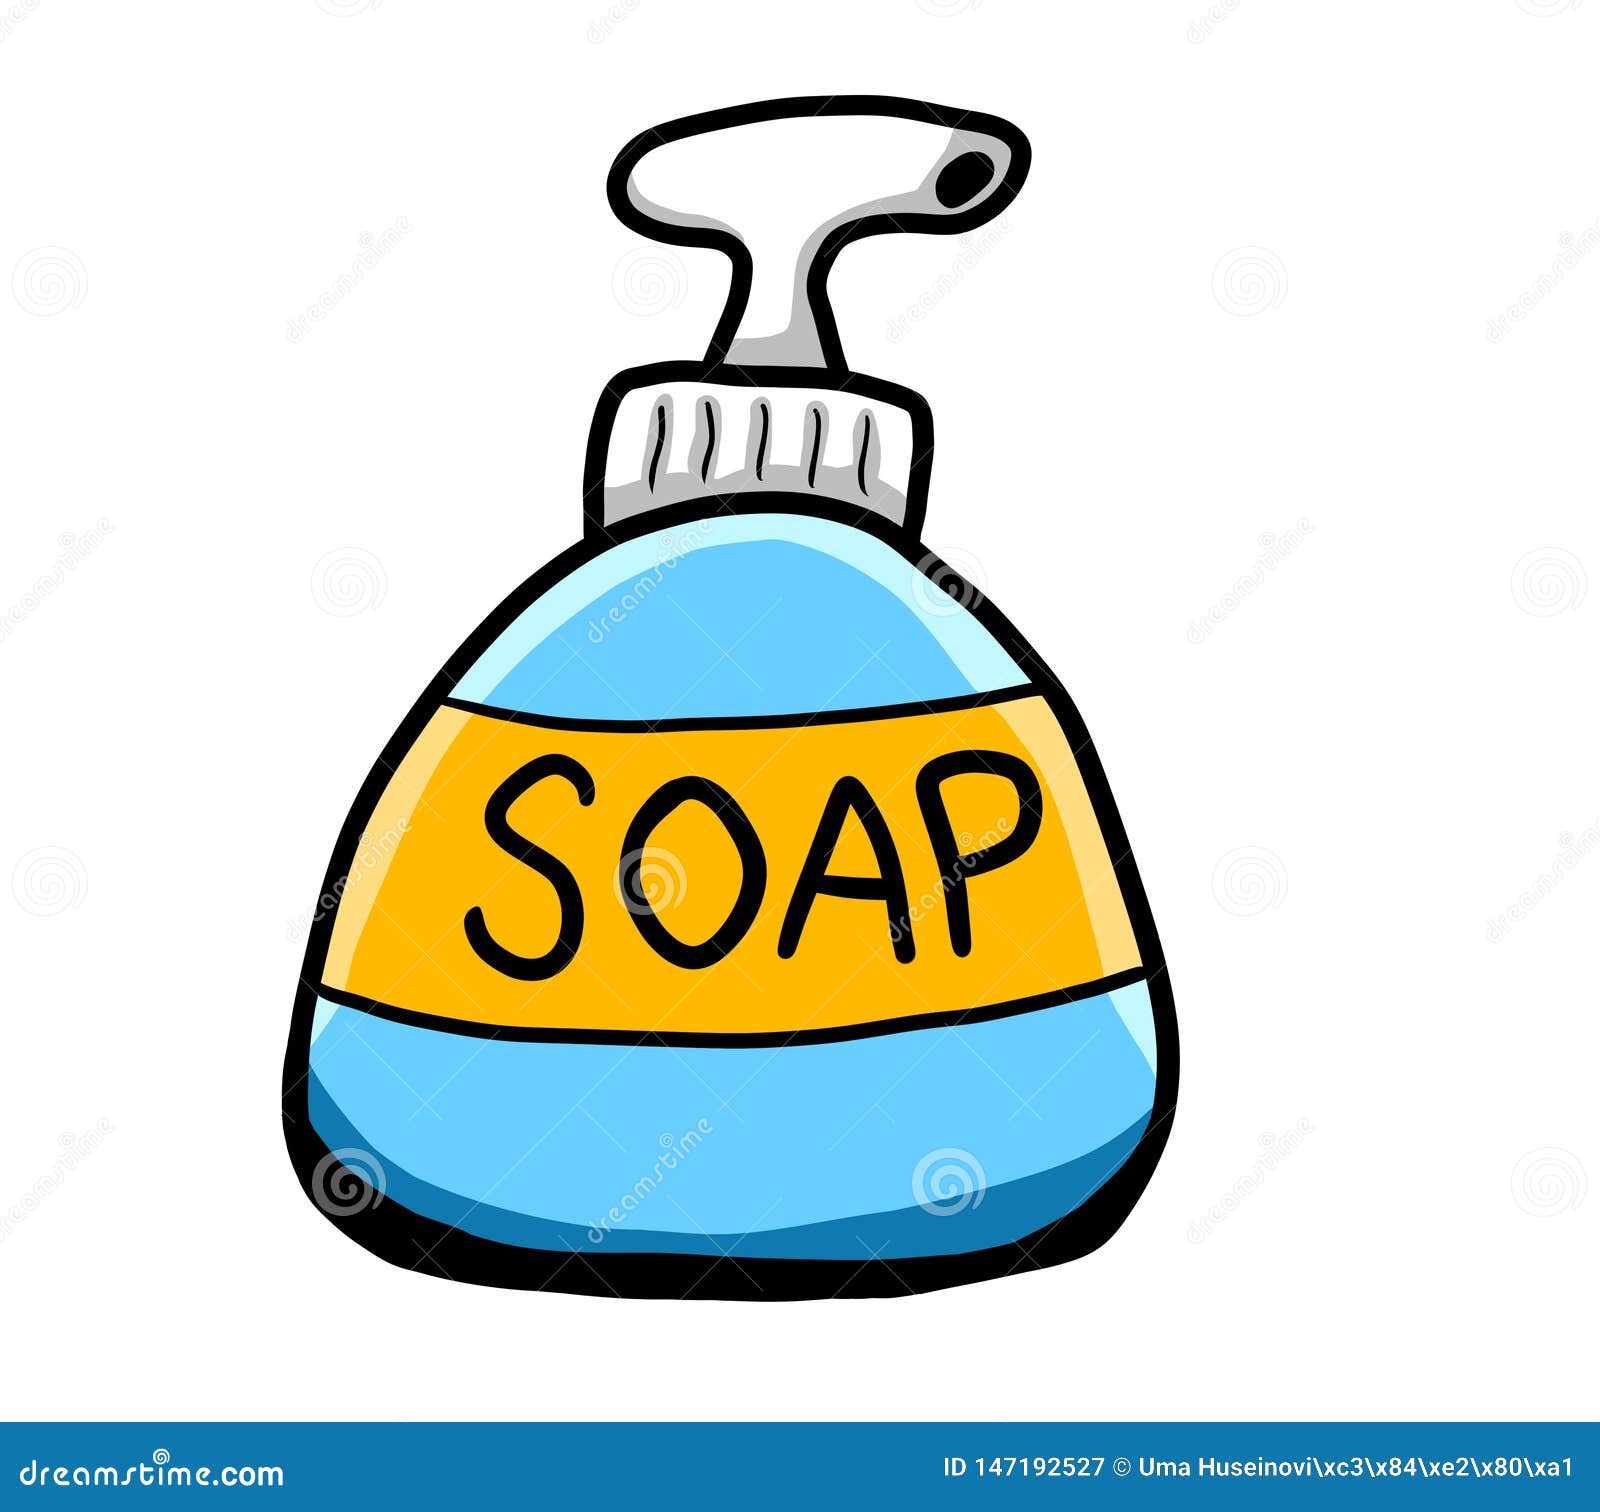 Cartoon Bottle of Blue Soap Stock Illustration - Illustration of doodle,  dispenser: 147192527